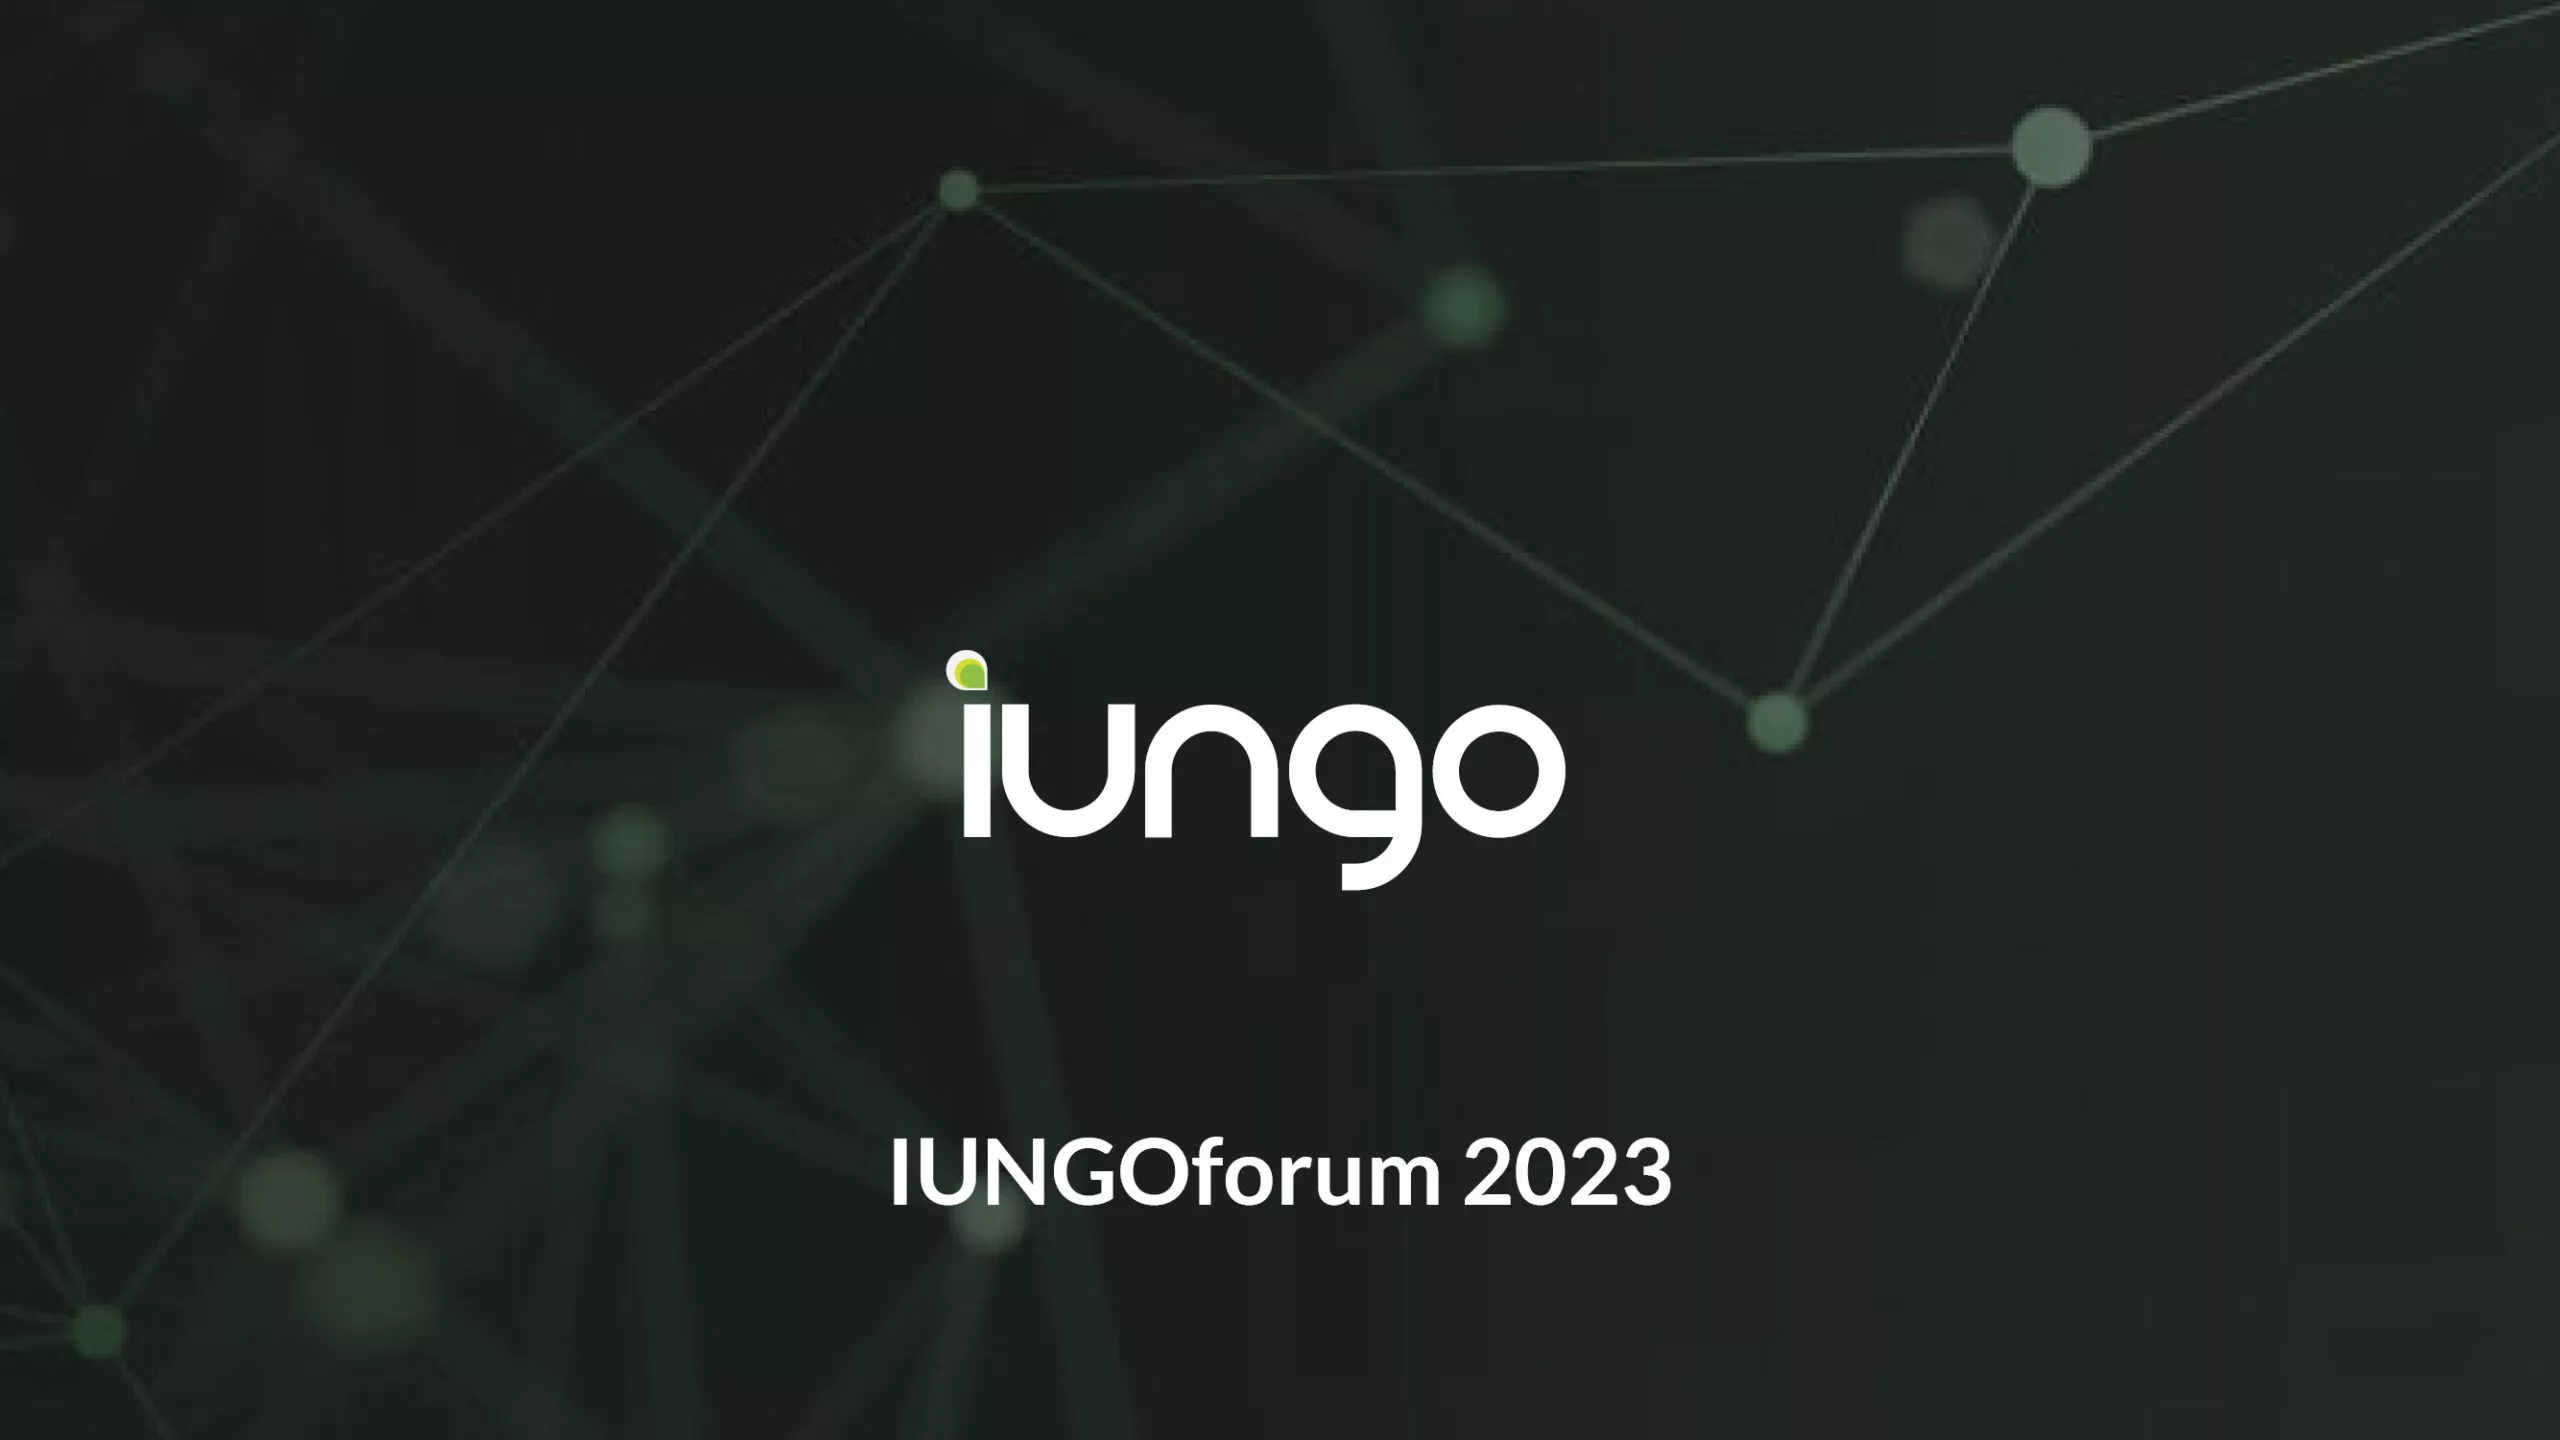 iungoforum 2023